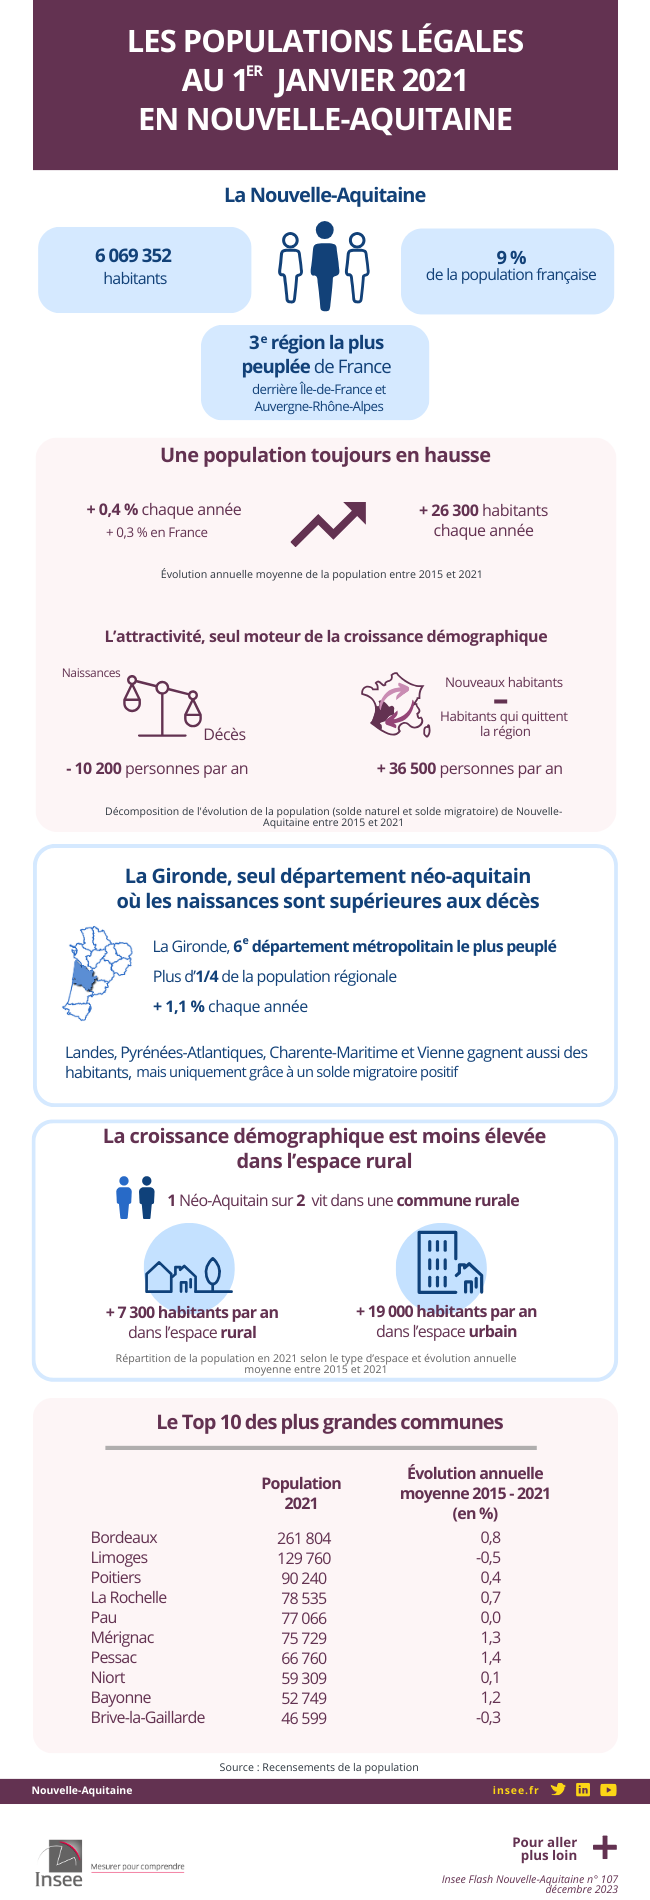 Les populations légales au 1er janvier 2021 en Nouvelle-Aquitaine